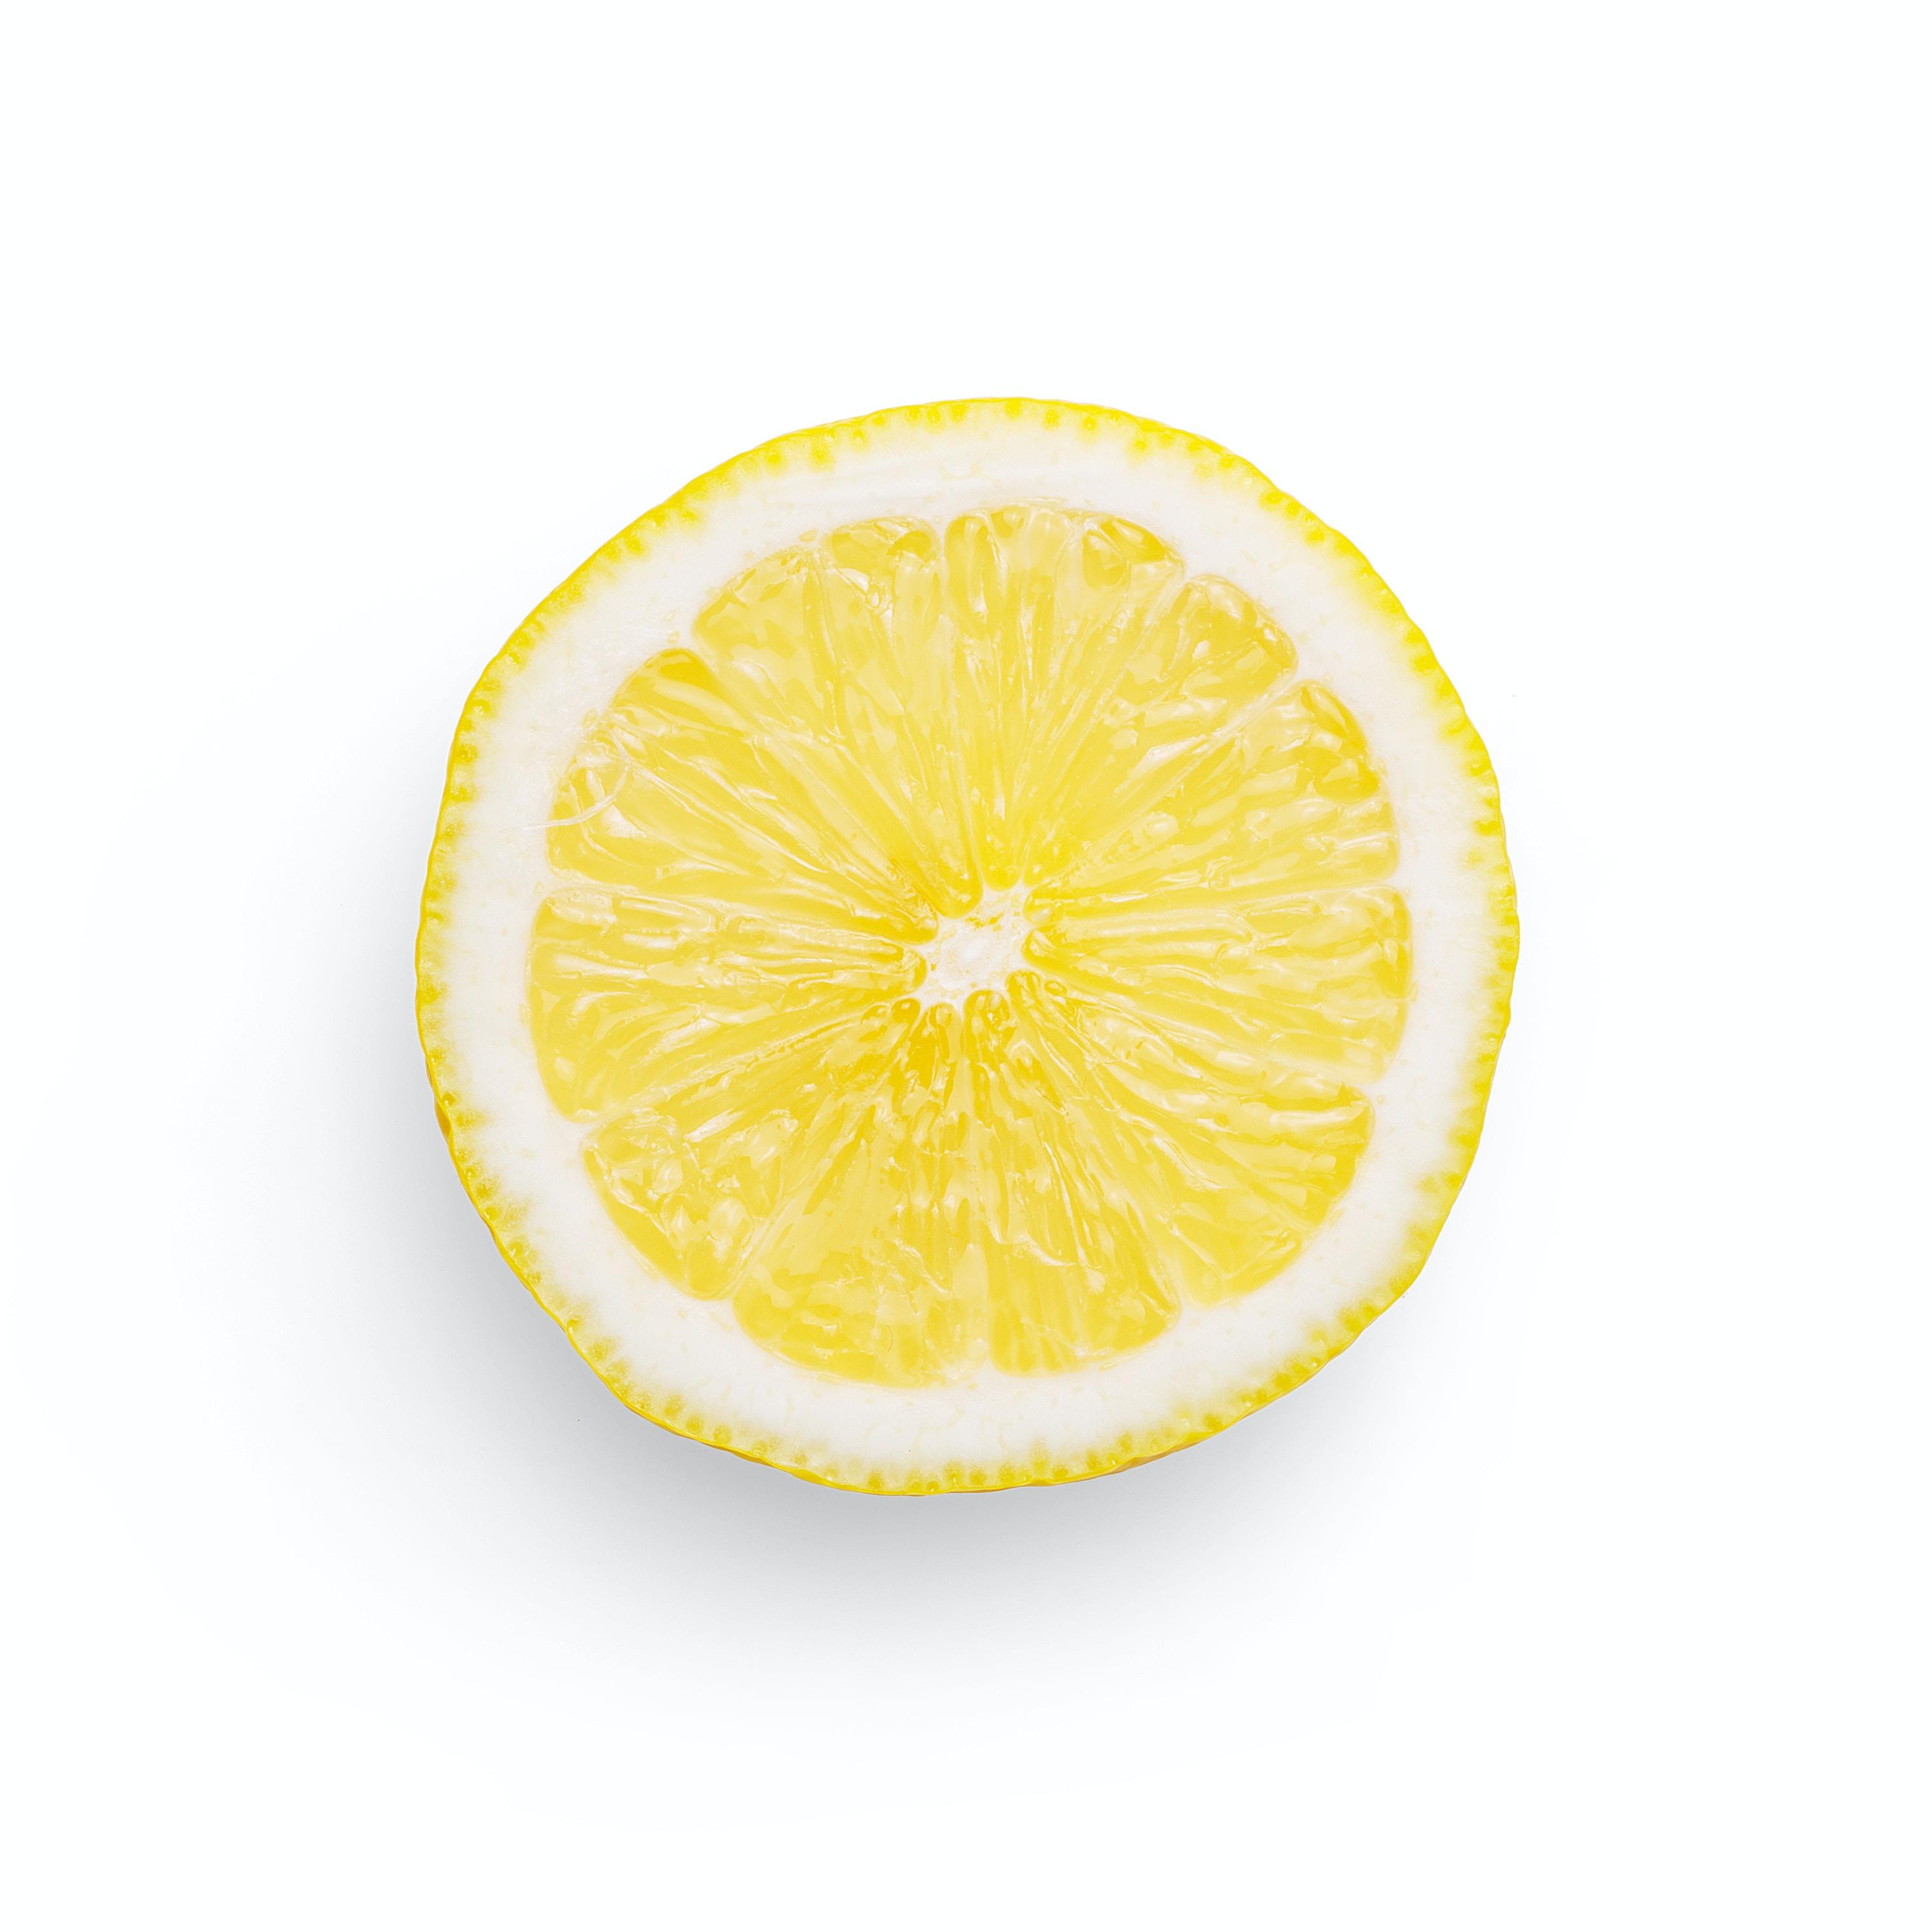 Cytryny - jakie mają działanie? Kiedy je stosować i jakie mają witaminy? Cytryny – właściwości lecznicze, witamina C i kalorie. Właściwości odchudzające cytryny. Picie wody z cytryną